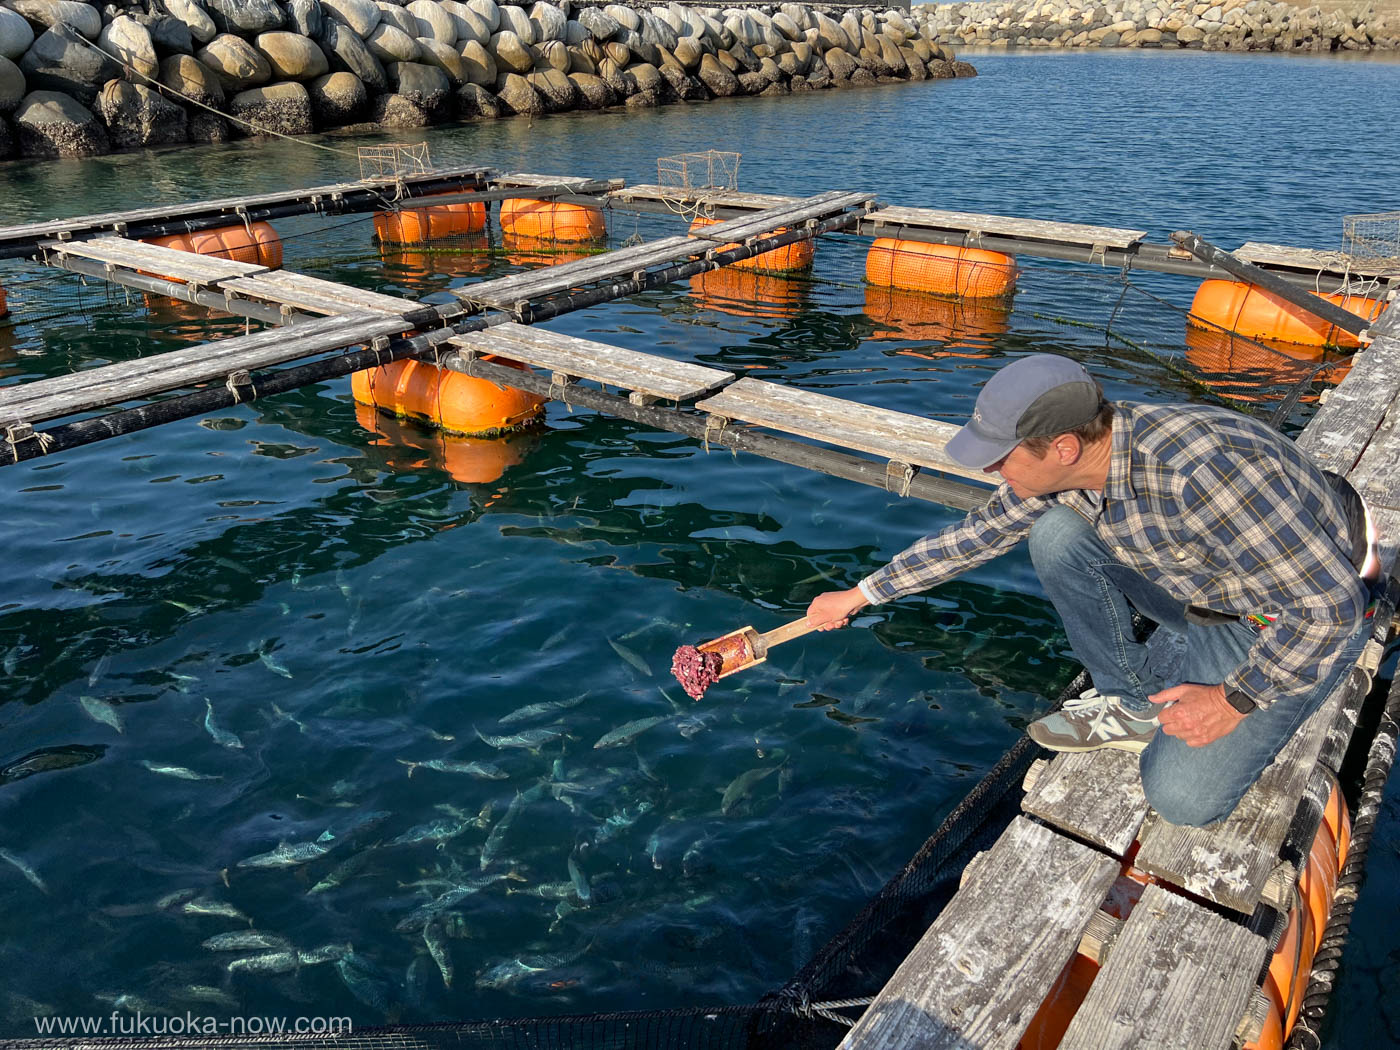 Farming local fish around Himeshima, 姫島の地魚を養殖